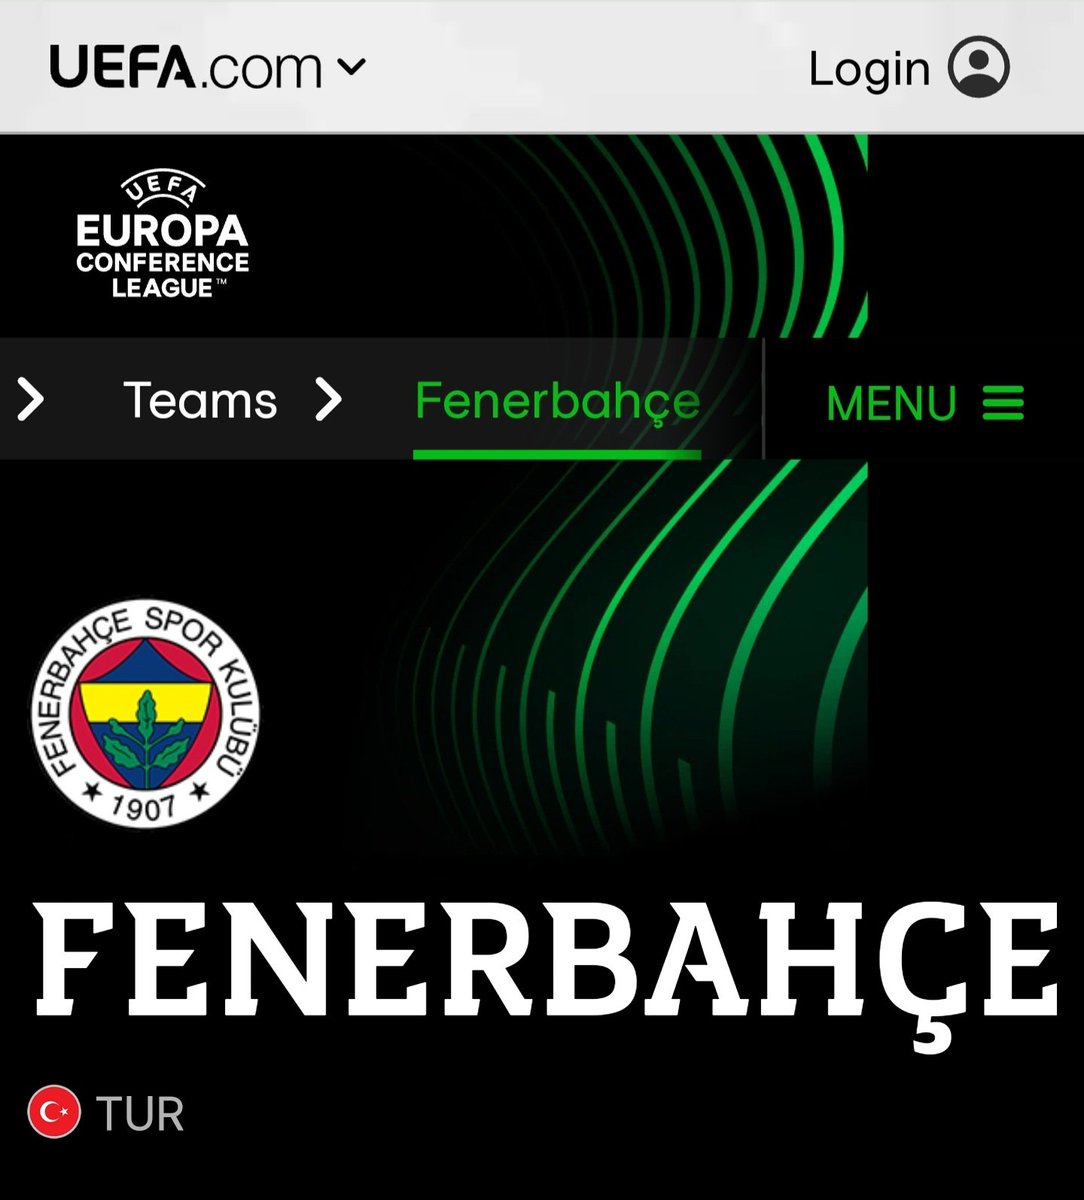 UEFA resmi sitesi, 22 Haziran 2023.
Kulüp arma kullanımı.
Yorumsuz!